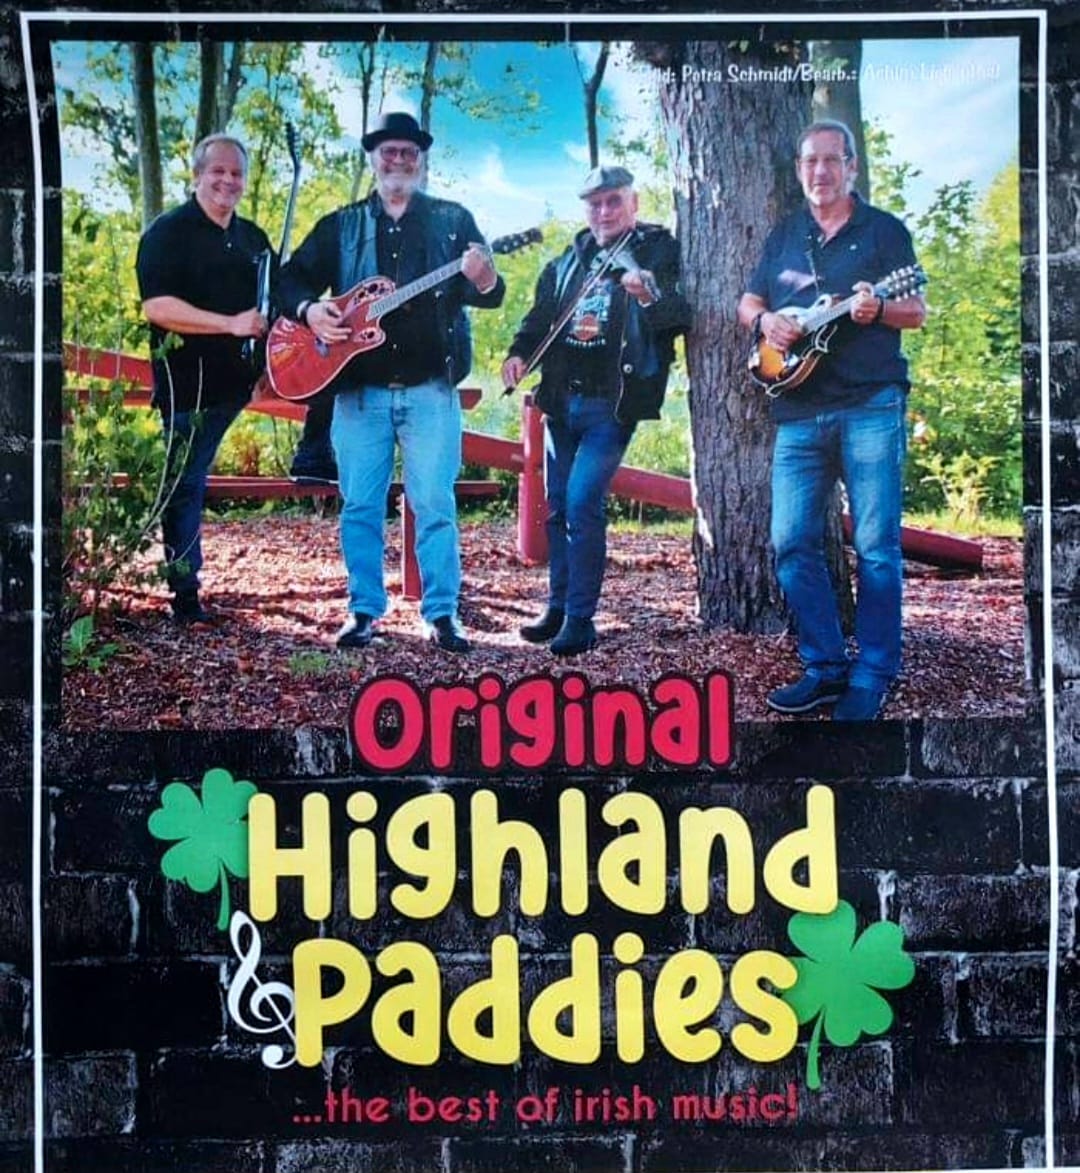 Highland Paddies